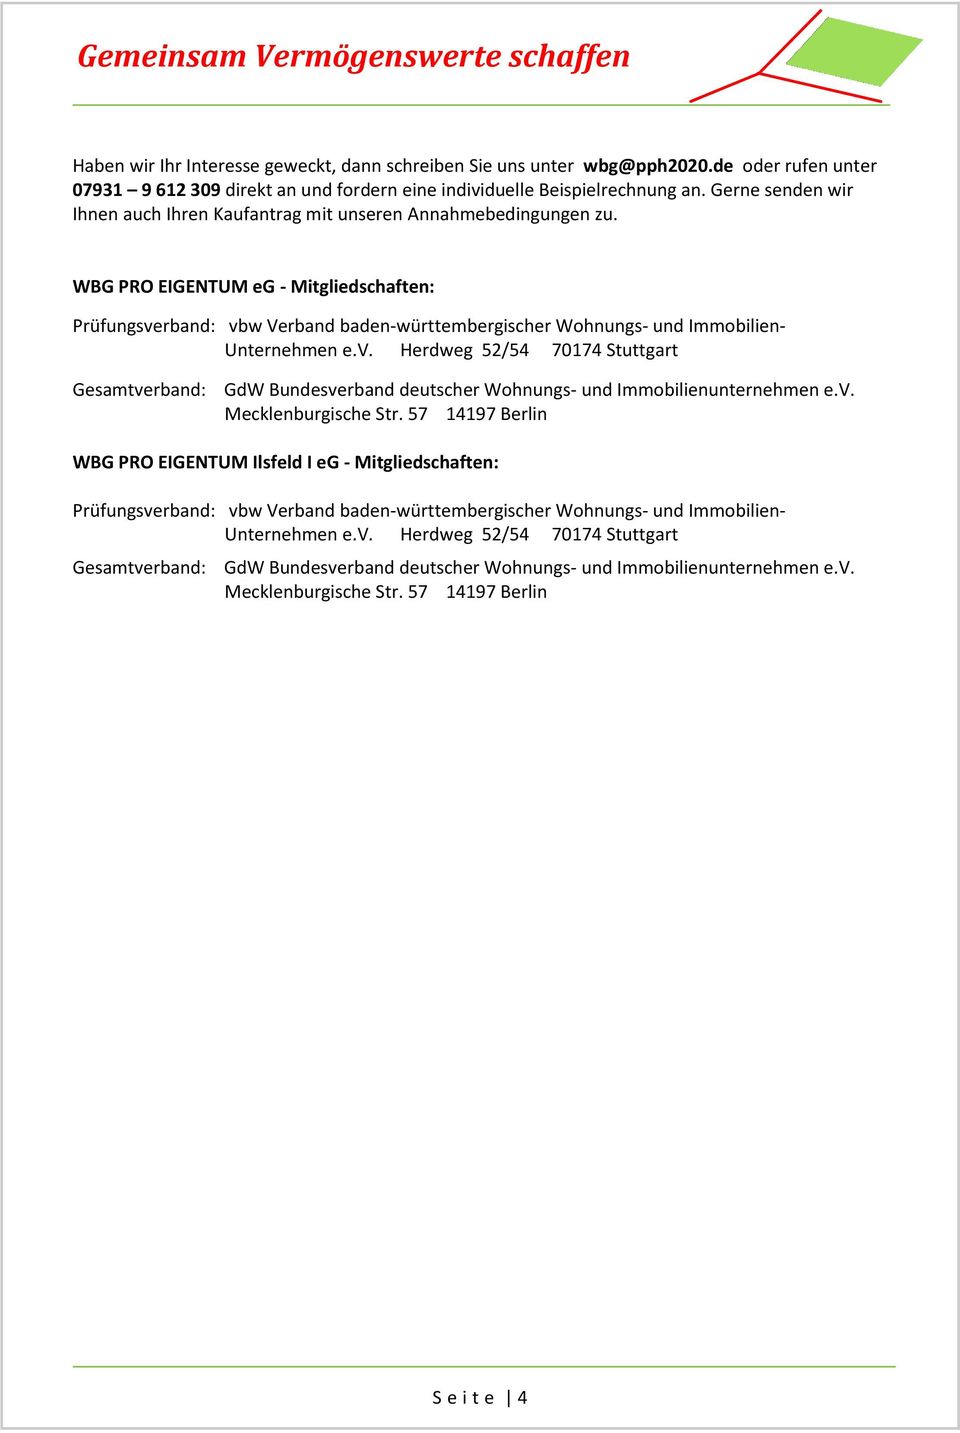 WBG PRO EIGENTUM eg - Mitgliedschaften: Prüfungsverband: vbw Verband baden-württembergischer Wohnungs- und Immobilien- Unternehmen e.v. Herdweg 52/54 70174 Stuttgart Gesamtverband: GdW Bundesverband deutscher Wohnungs- und Immobilienunternehmen e.